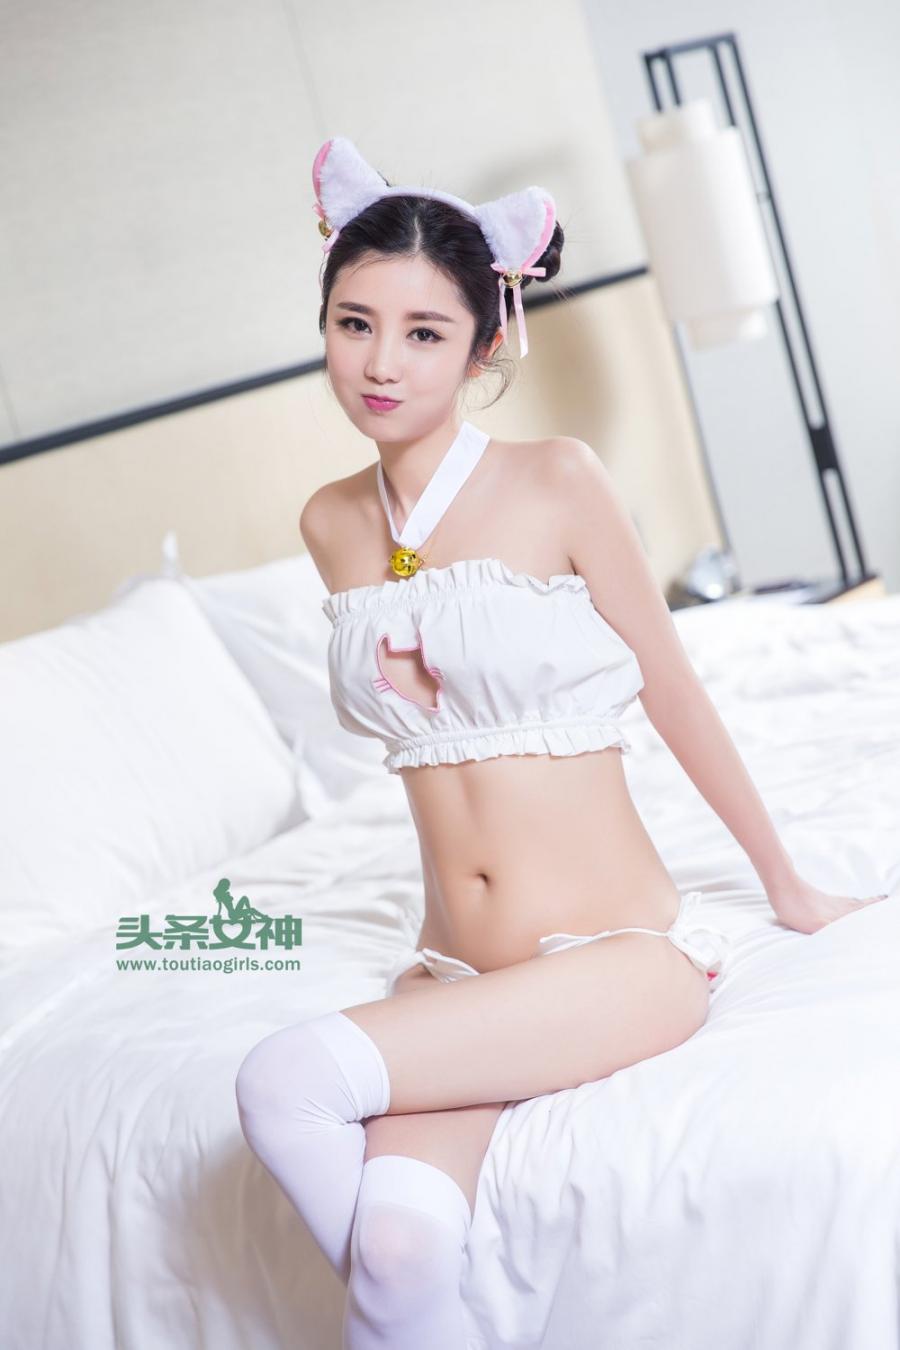 TouTiao Girls Su Liang